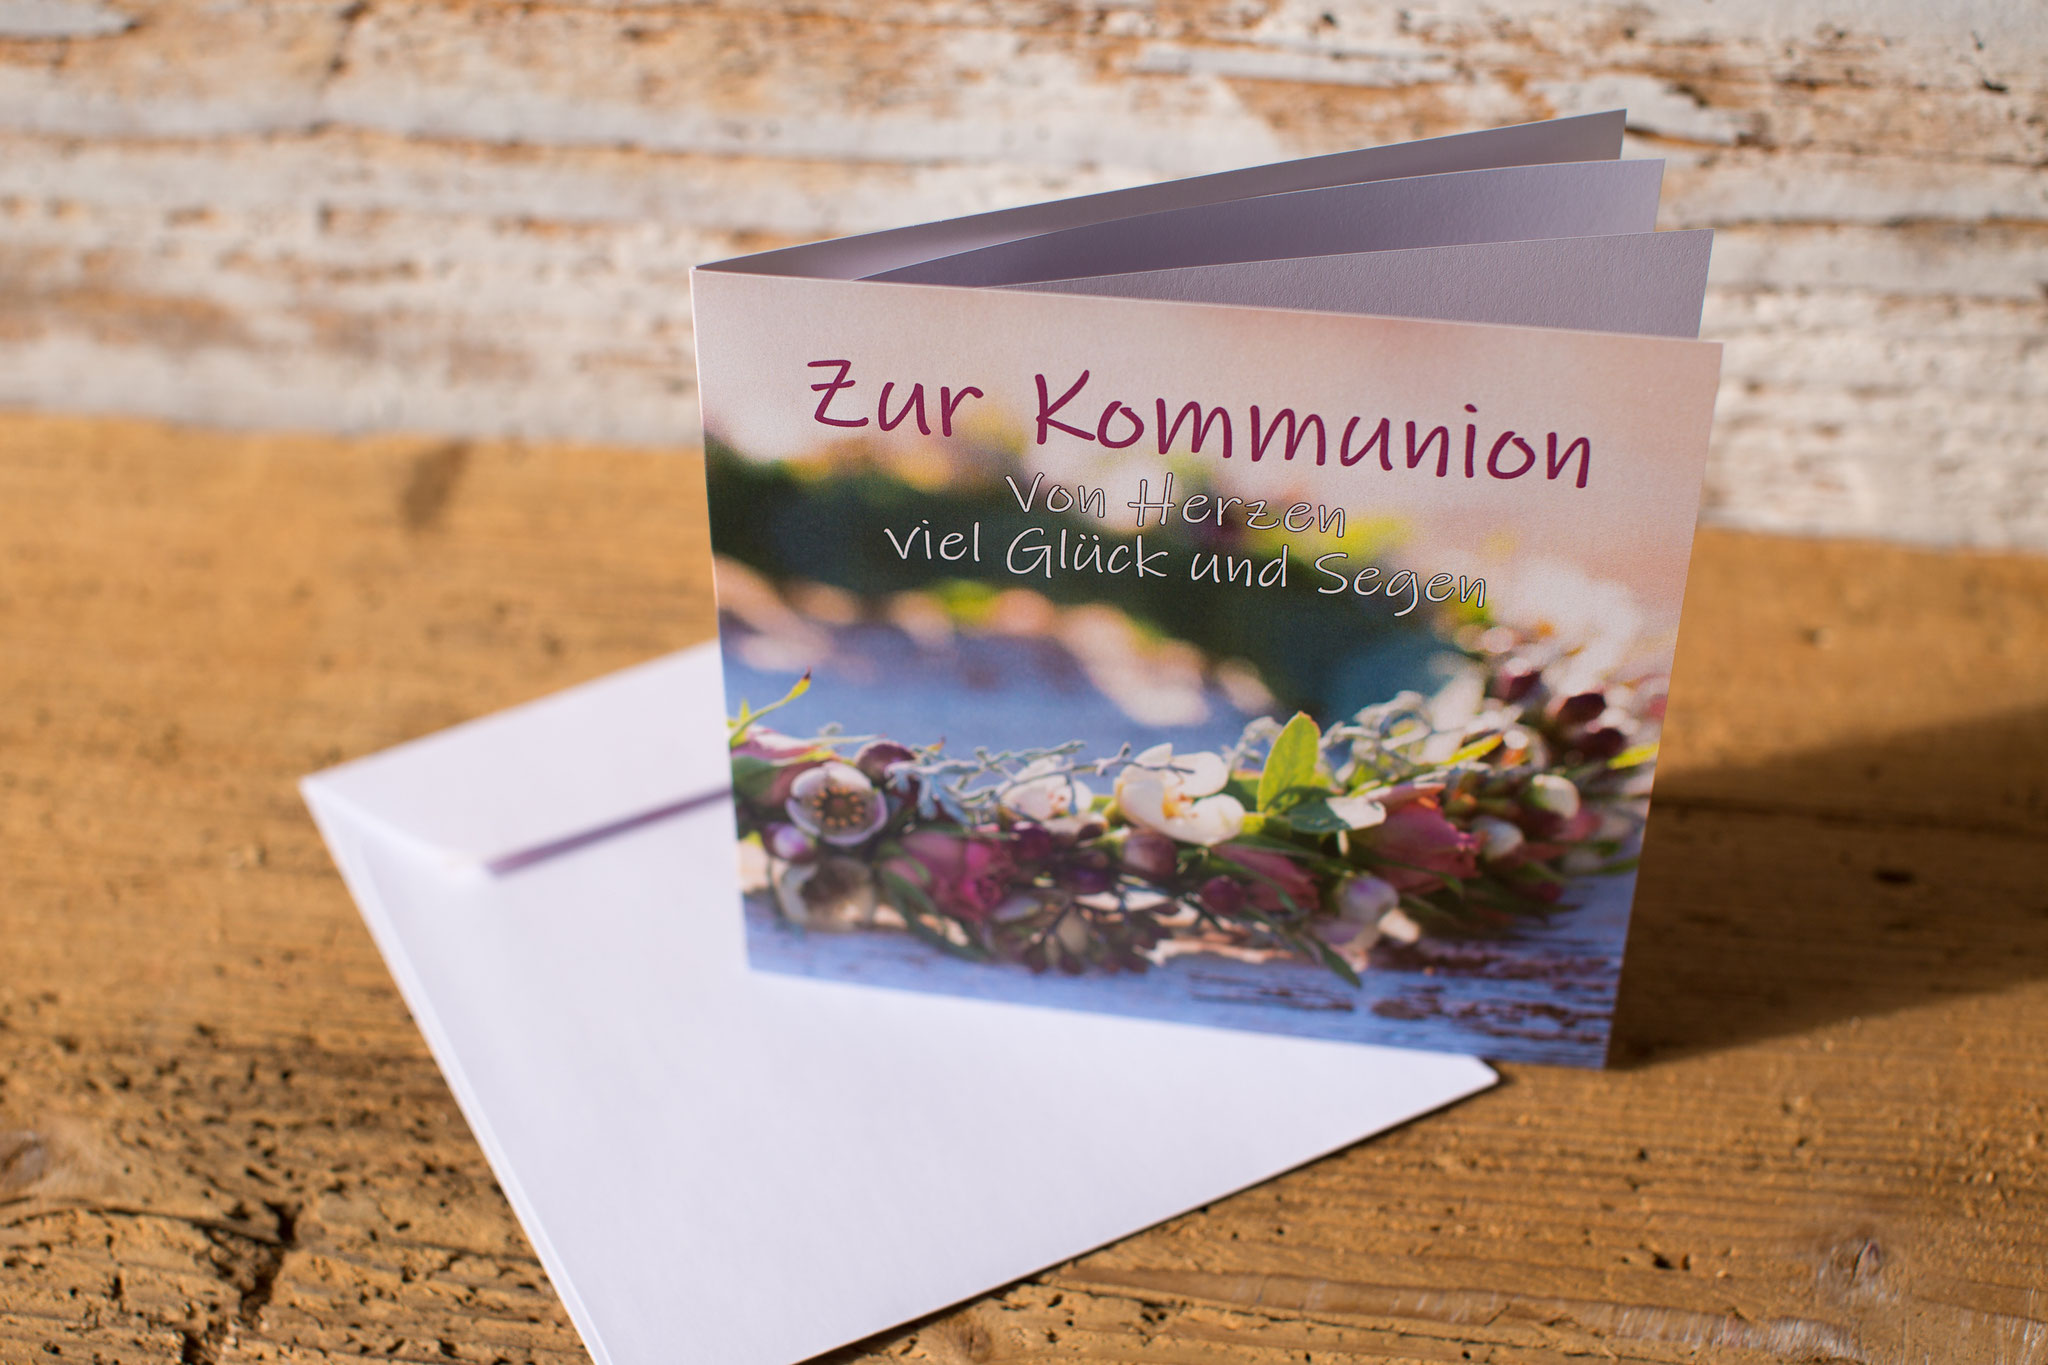 Glückwunschkarte, Kommunion, Erstkommunion, Spruchkarte, Weisser Sonntag, kindgerecht, Kommunionspruch